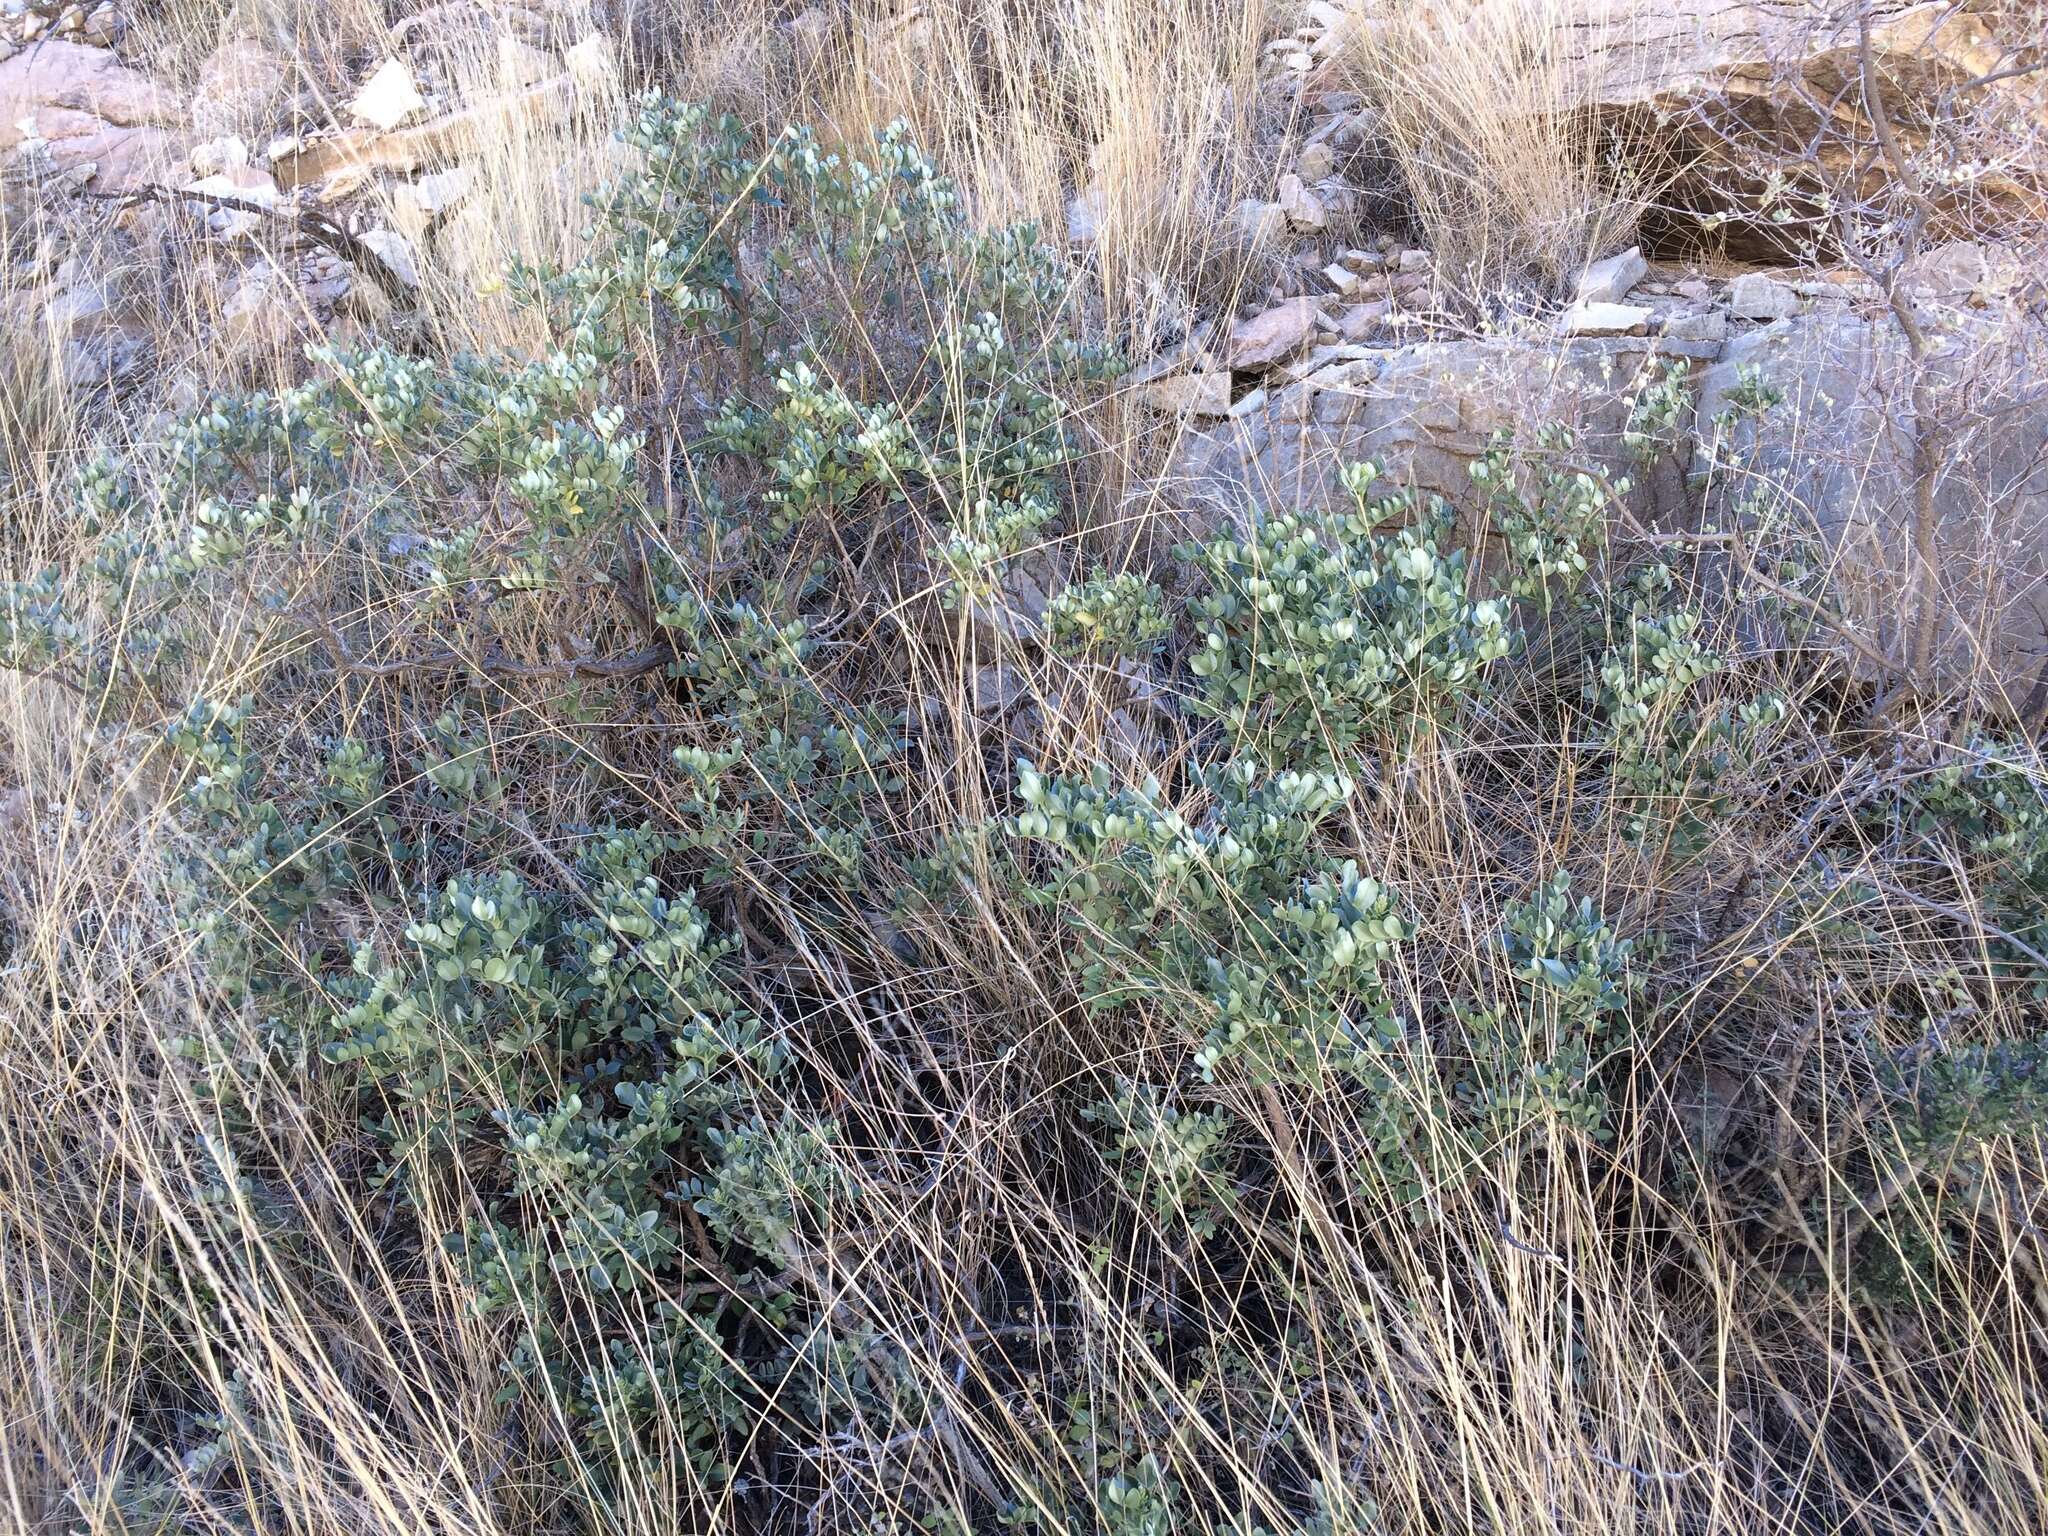 Image de Dermatophyllum gypsophilum subsp. guadalupense